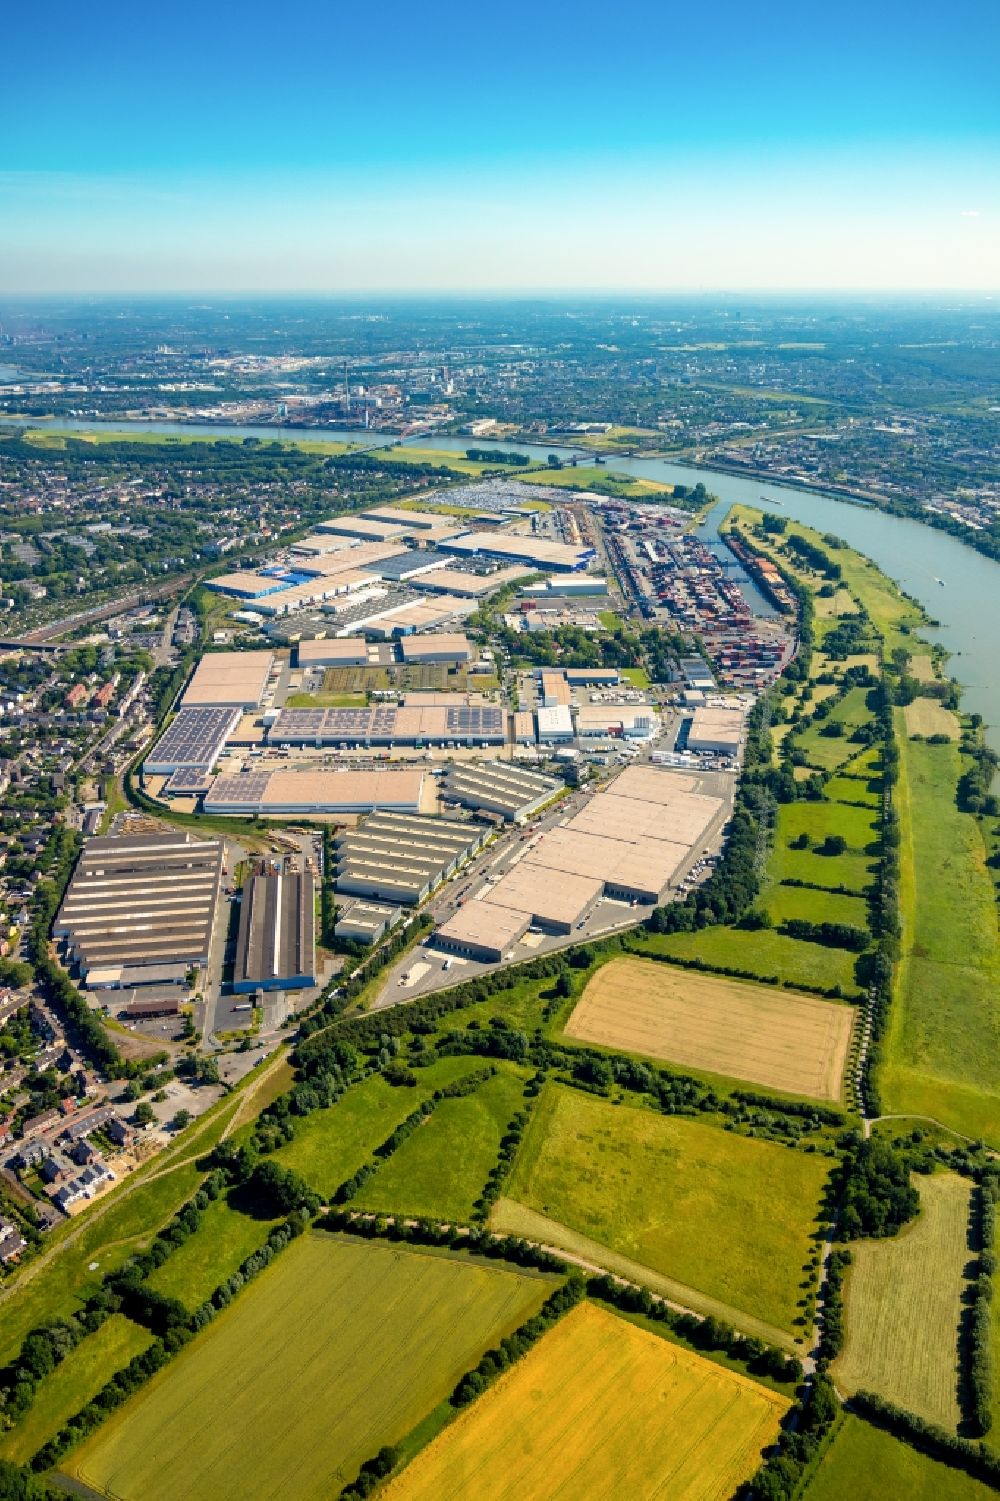 Duisburg aus der Vogelperspektive: Industrie- und Gewerbegebiet in Duisburg im Bundesland Nordrhein-Westfalen, Deutschland